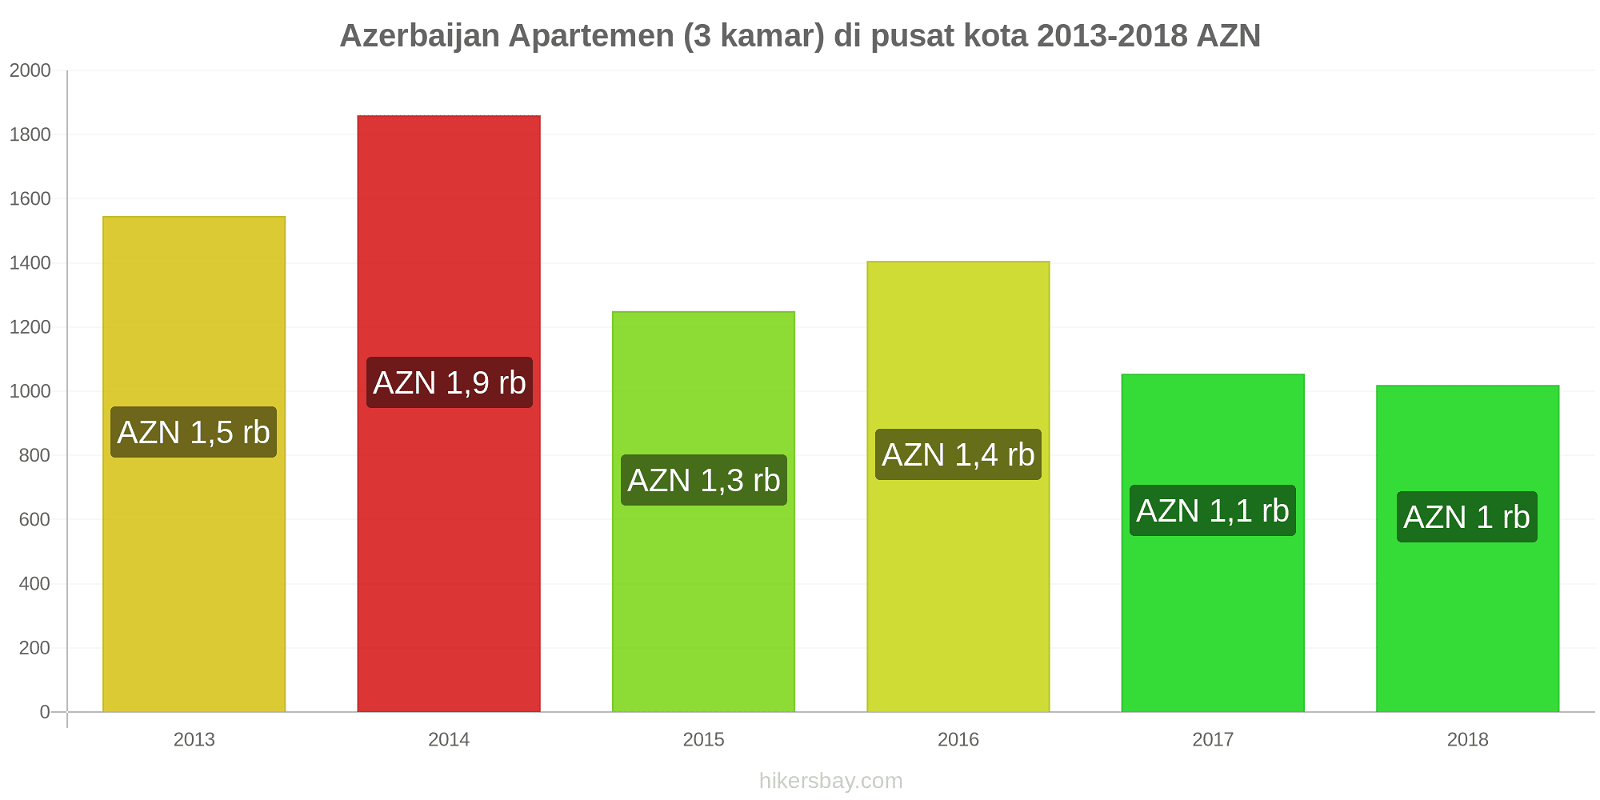 Azerbaijan perubahan harga Apartemen (3 kamar) di pusat kota hikersbay.com